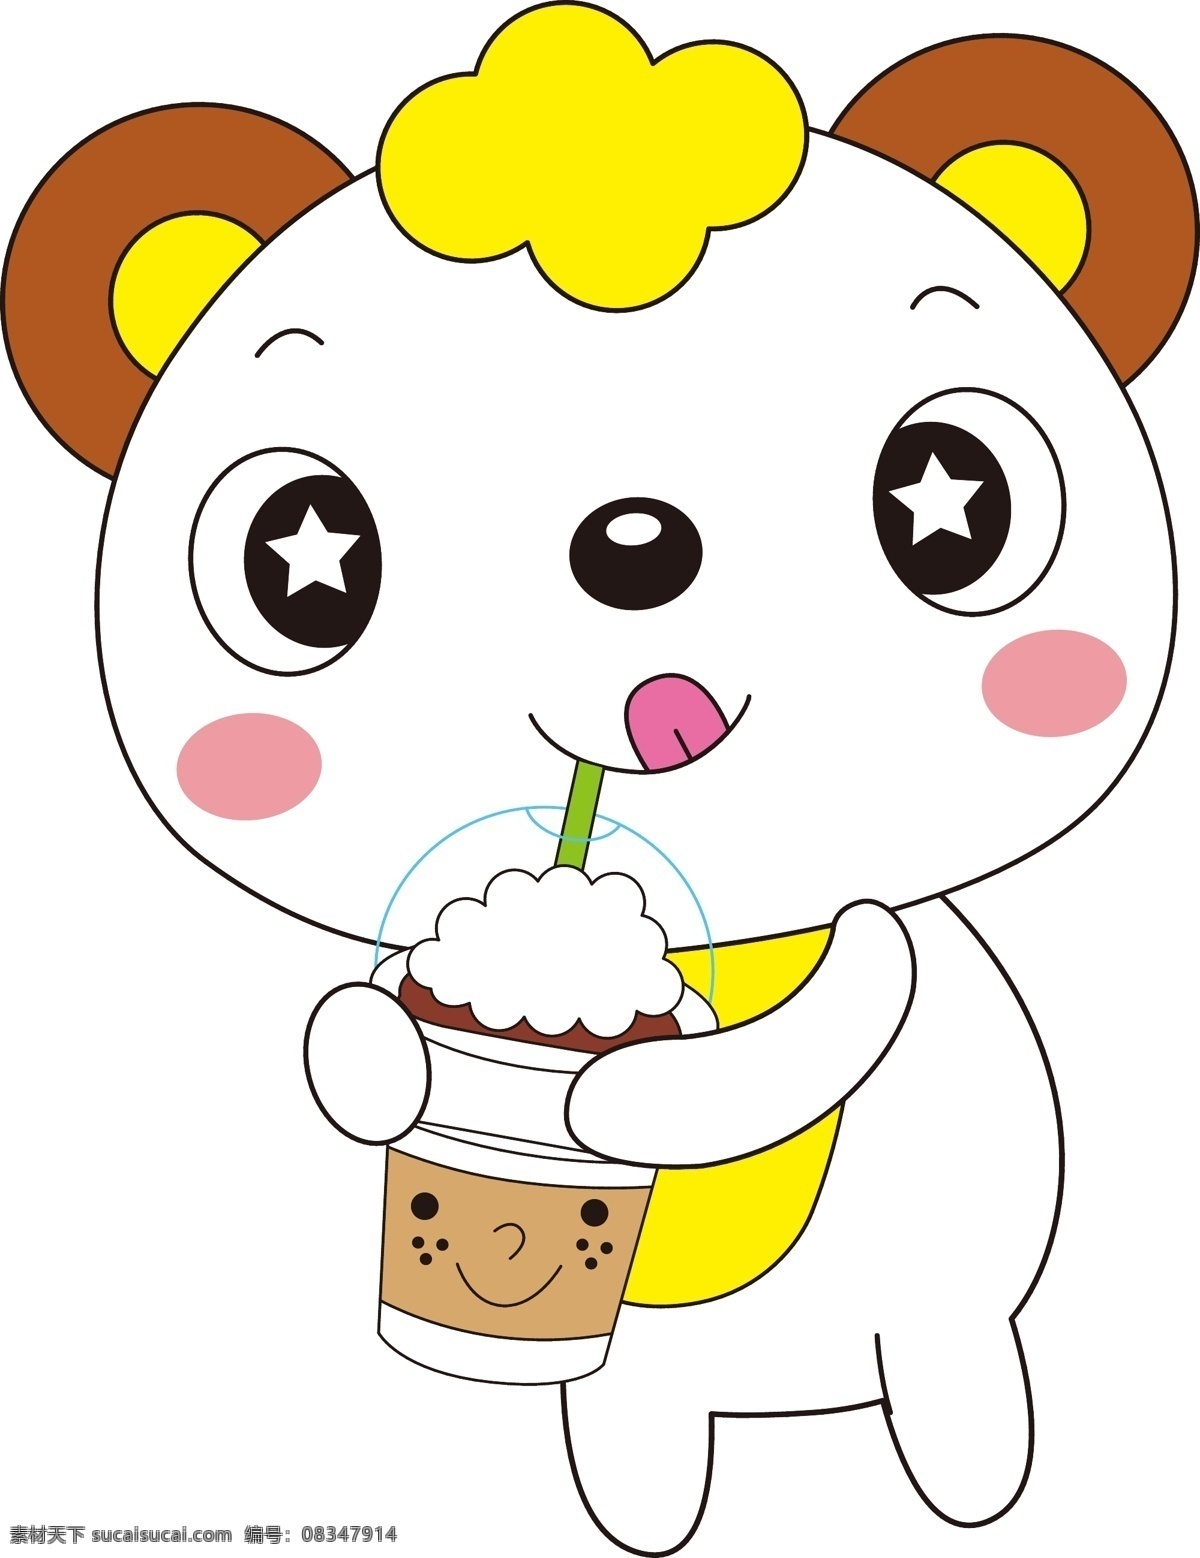 吃冰激凌 冷饮 吃冷饮 卡通熊猫 儿童 卡通头像 图案设计 卡通 卡通封面 本本封面 服装设计 图案 可爱动物 可爱 卡通设计 矢量